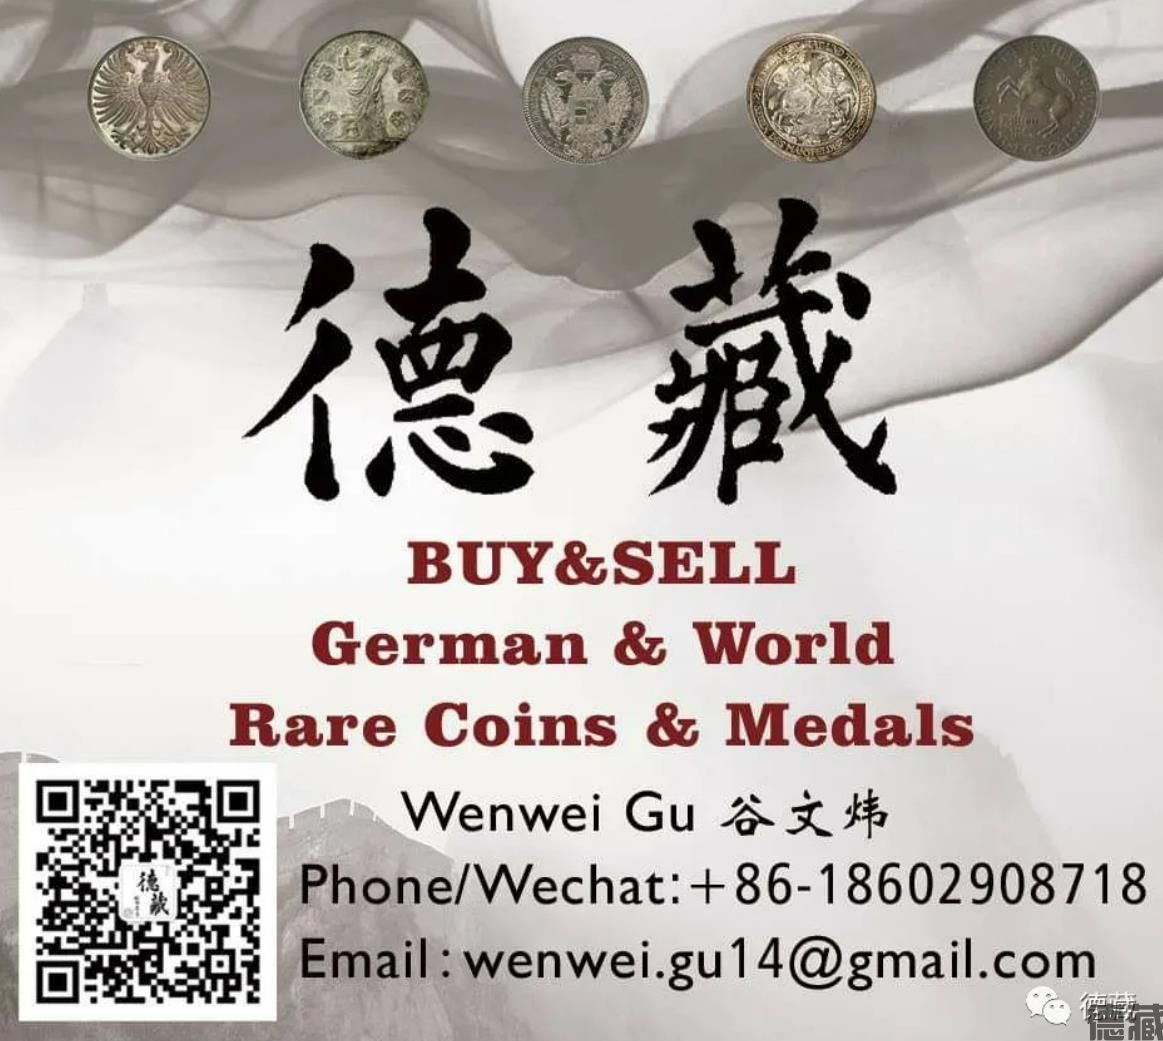 德藏将参展2020年10月16-17日上海中福钱币博览会